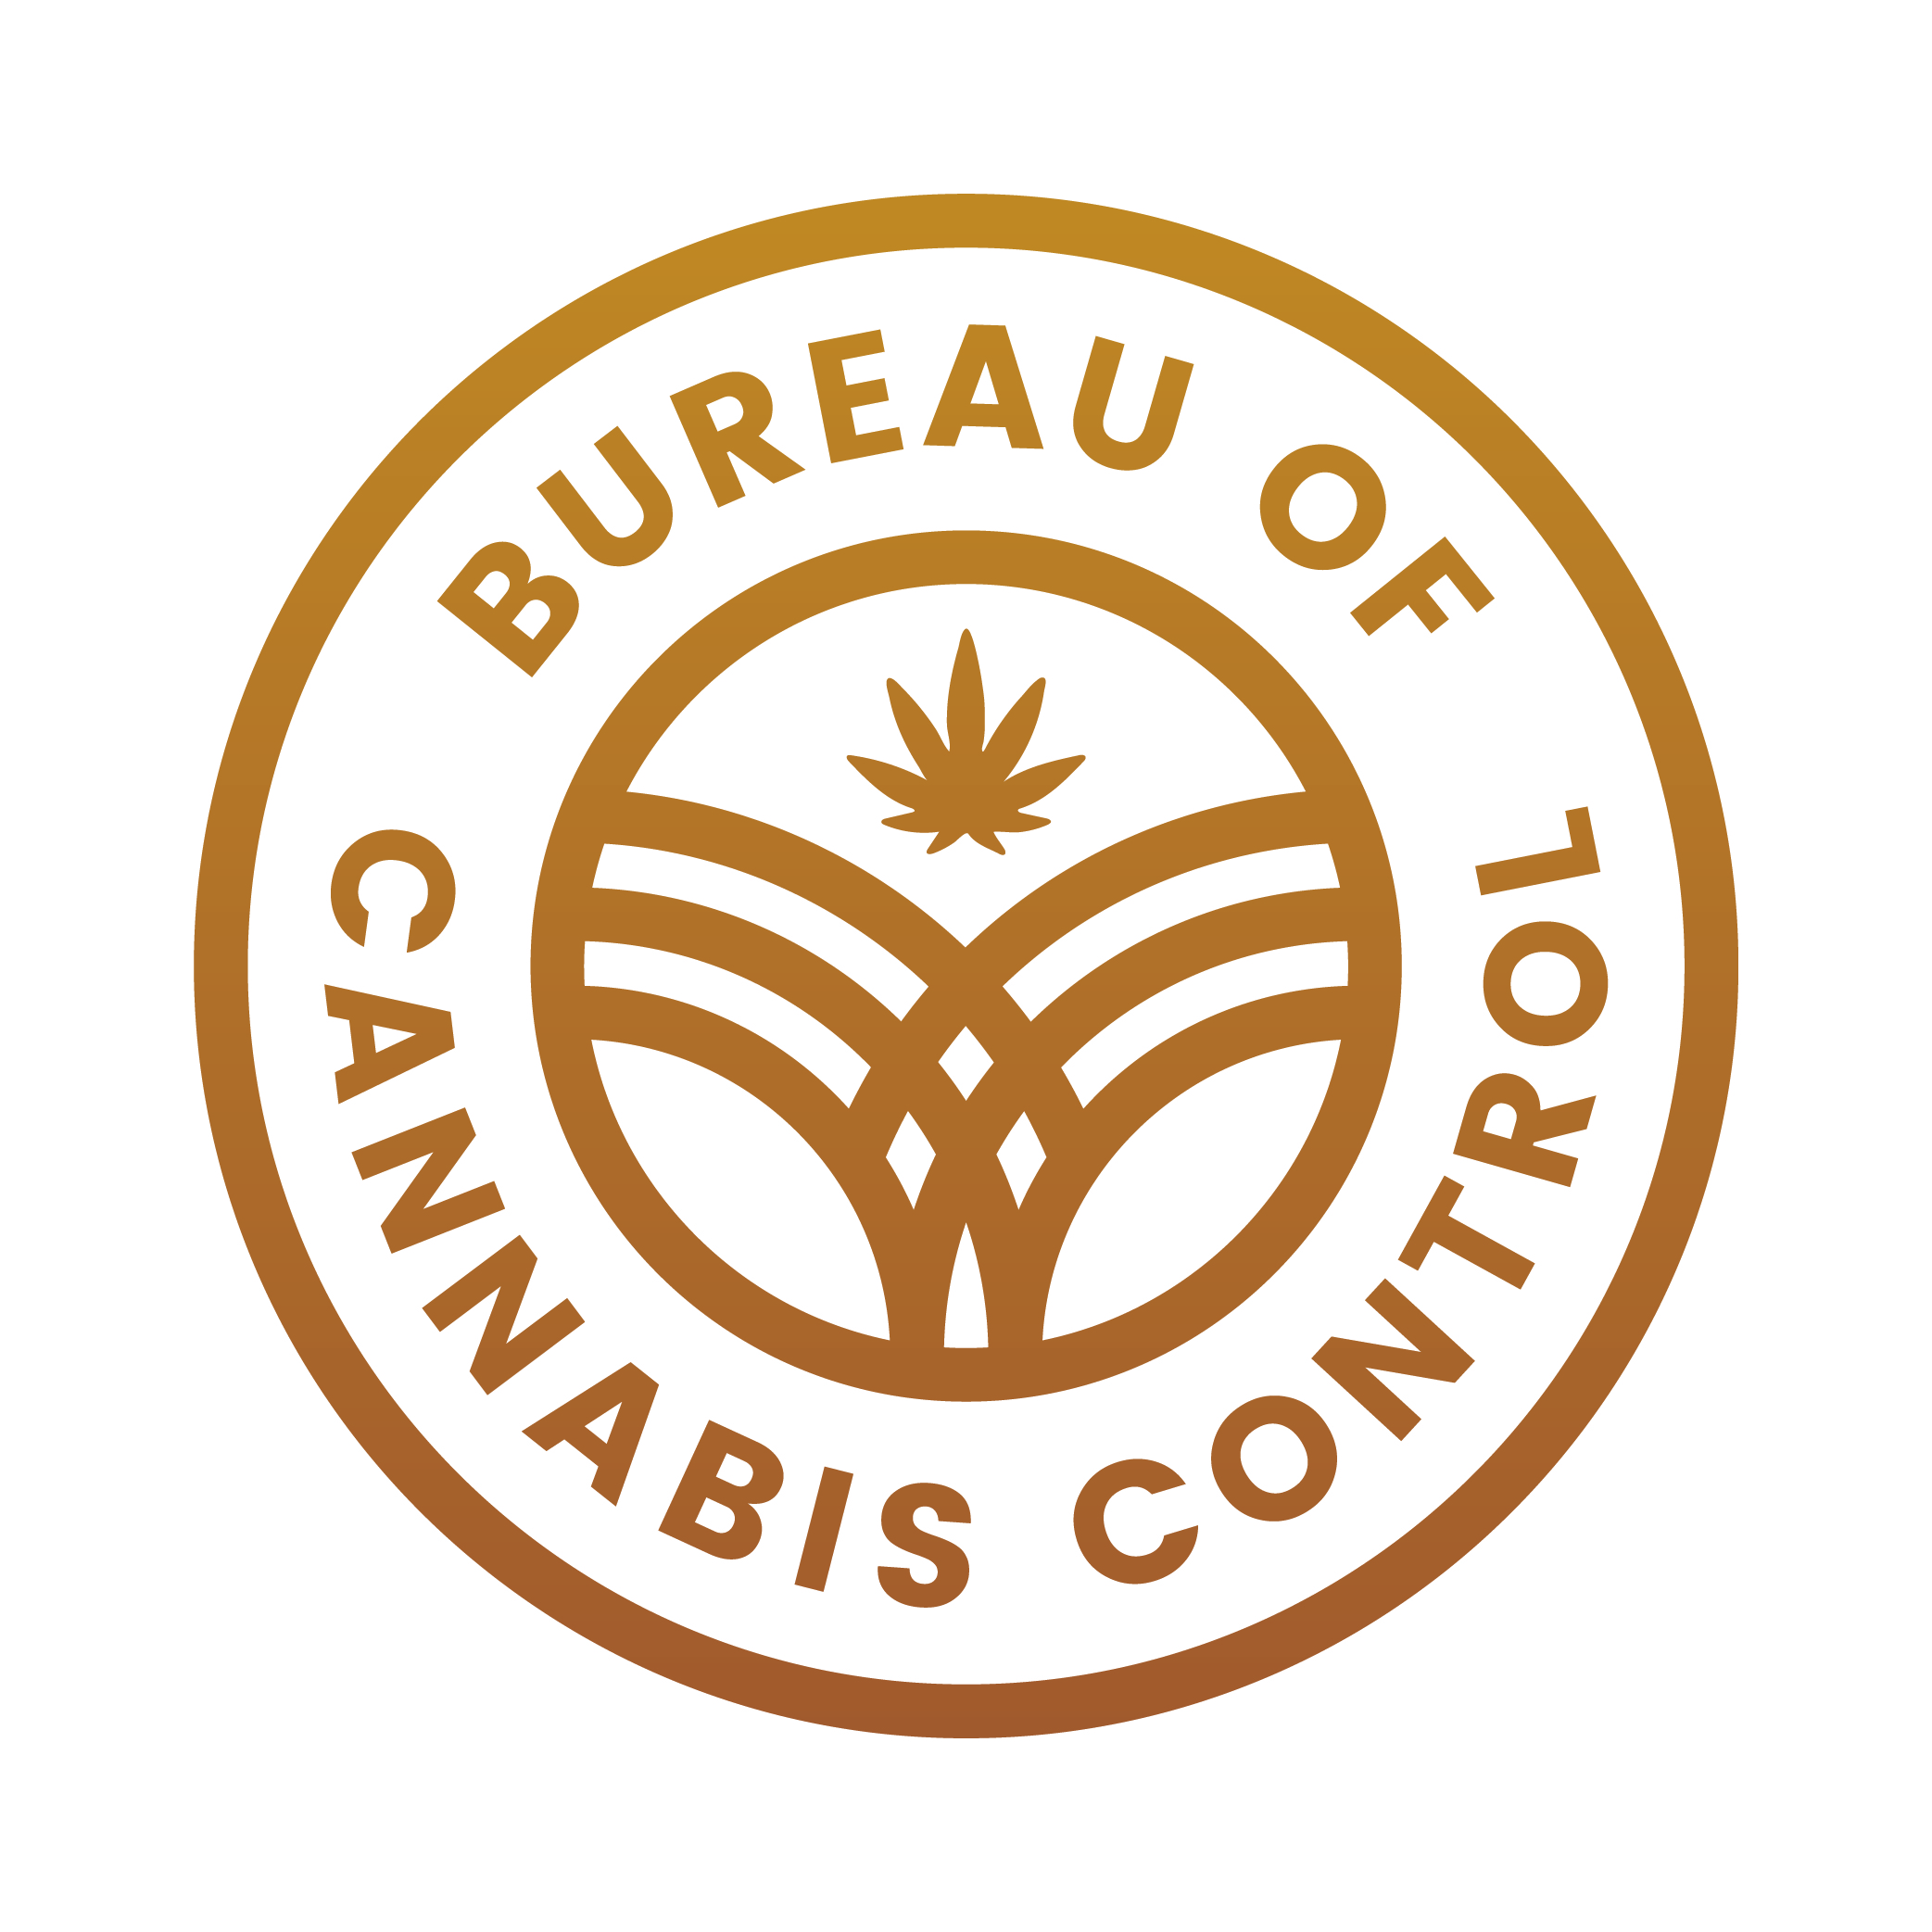 Bureau of Cannabis Control logo